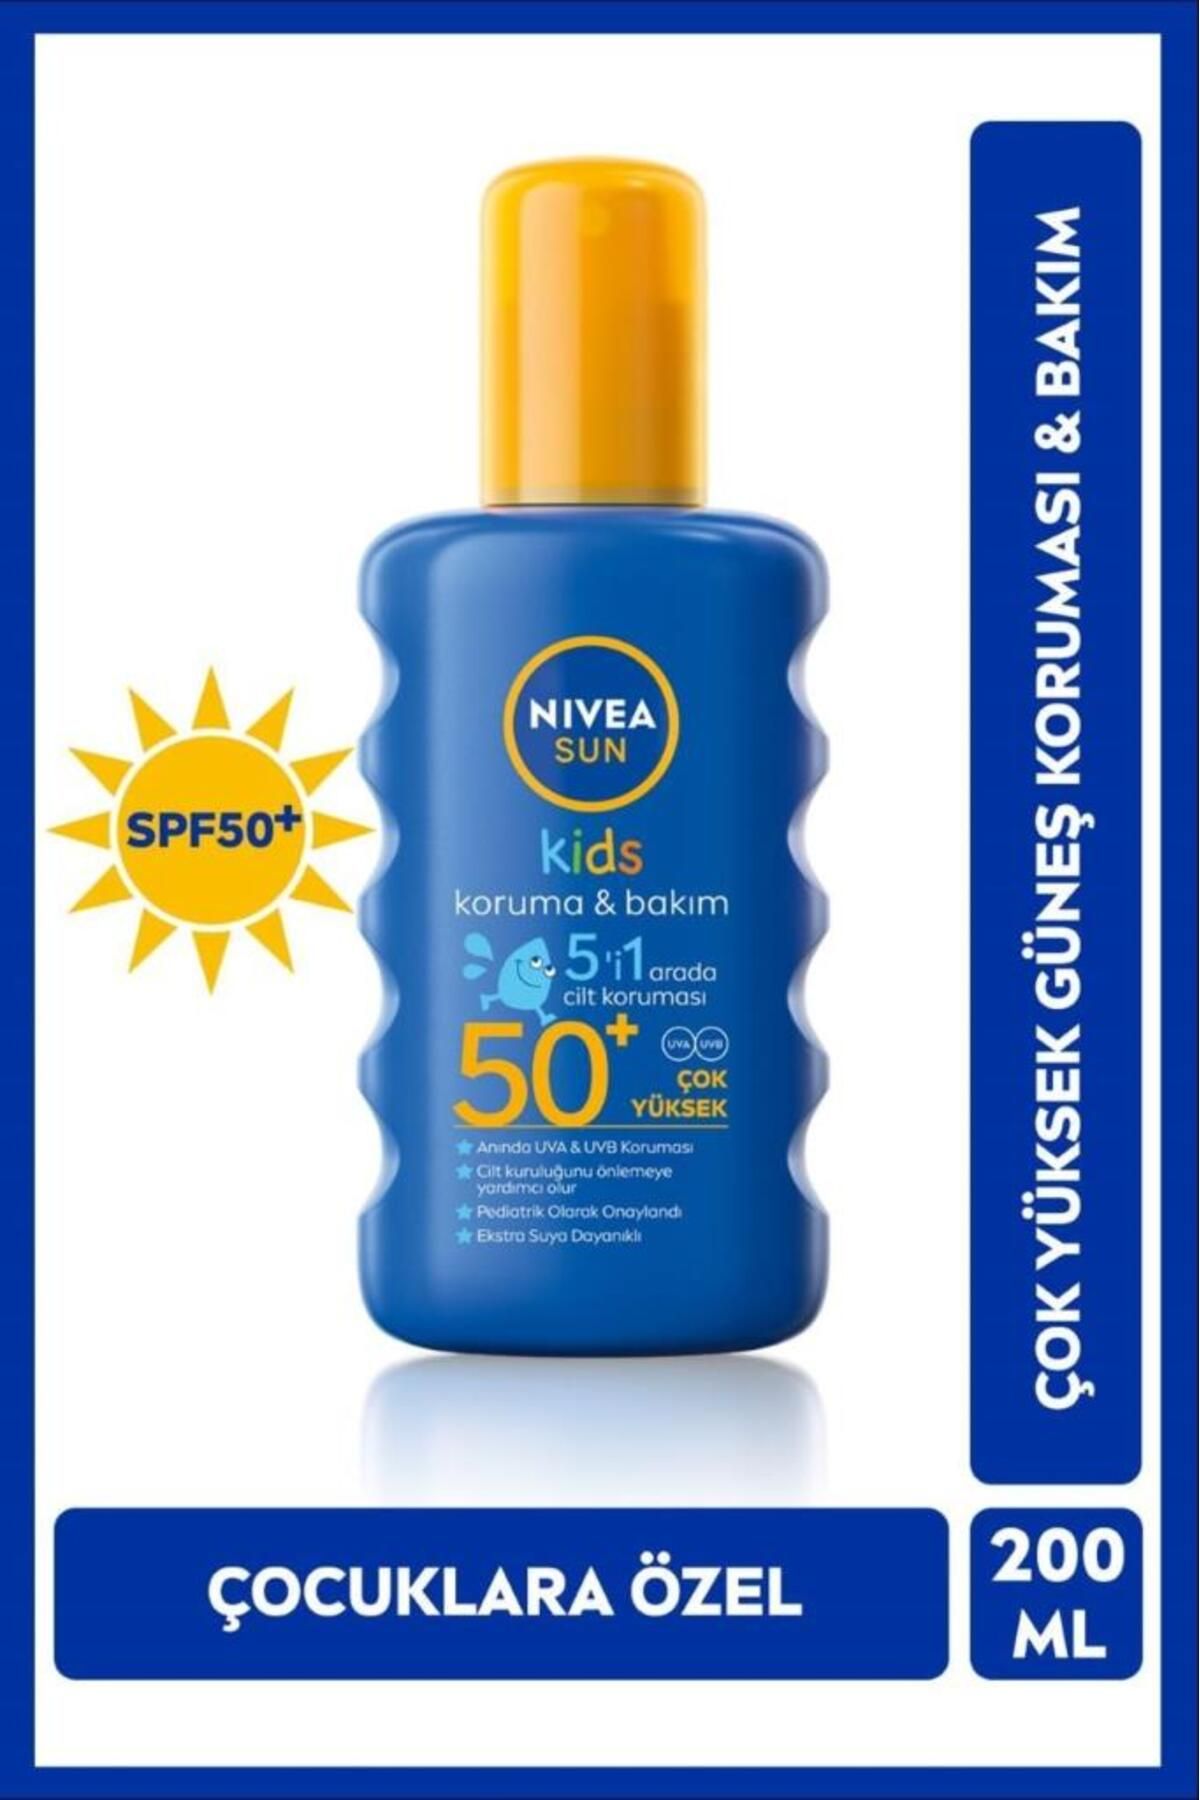 NIVEA Sun Kids Caring Sun Sprey Spf 50 Çocuklar Için Güneş Spreyi 200 ml